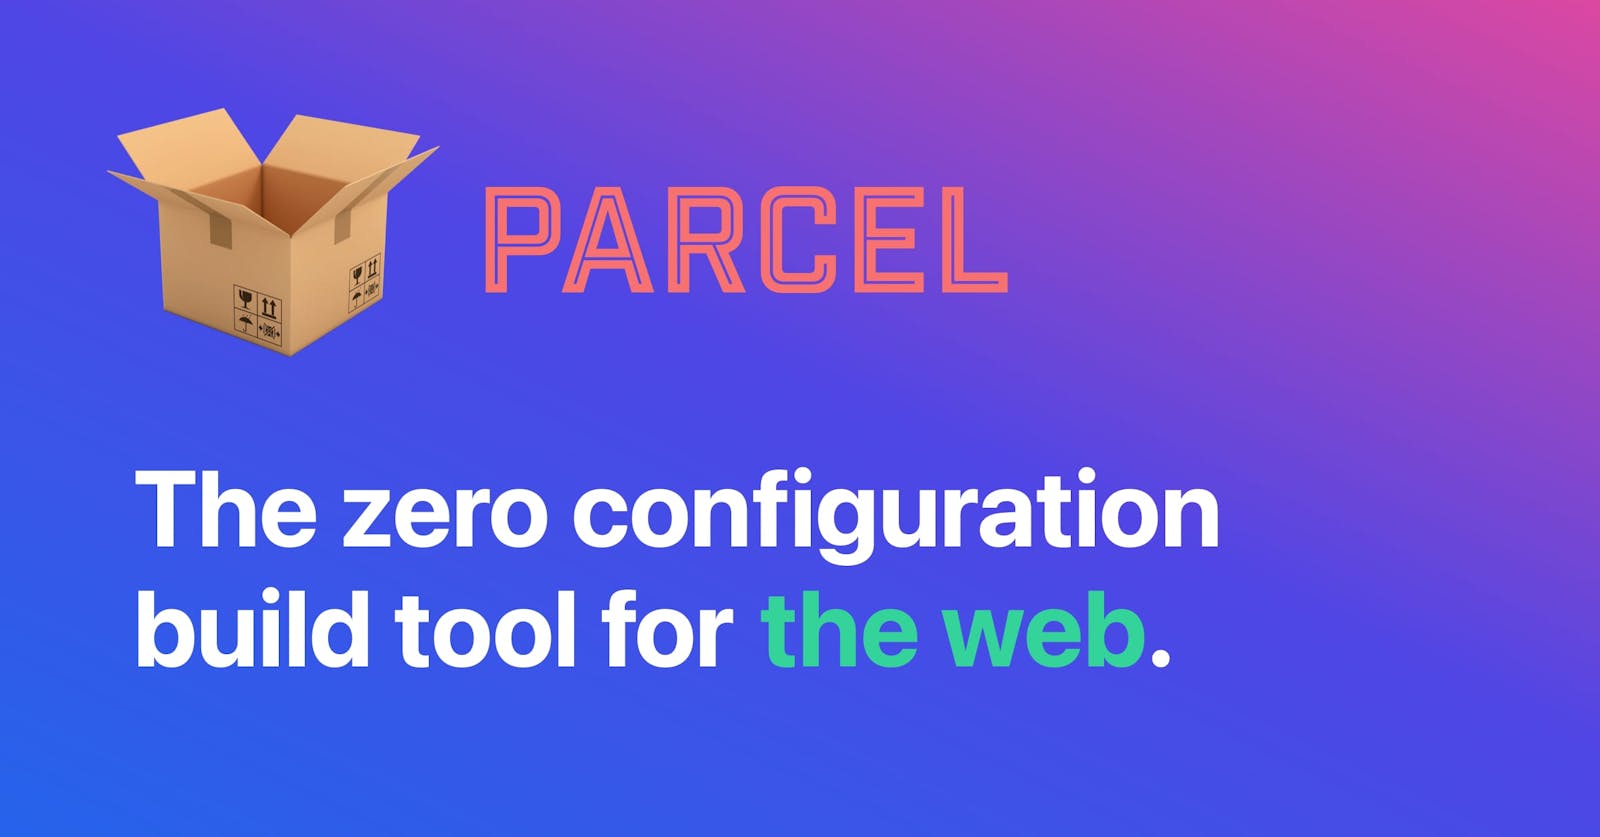 Parcel's Core Features